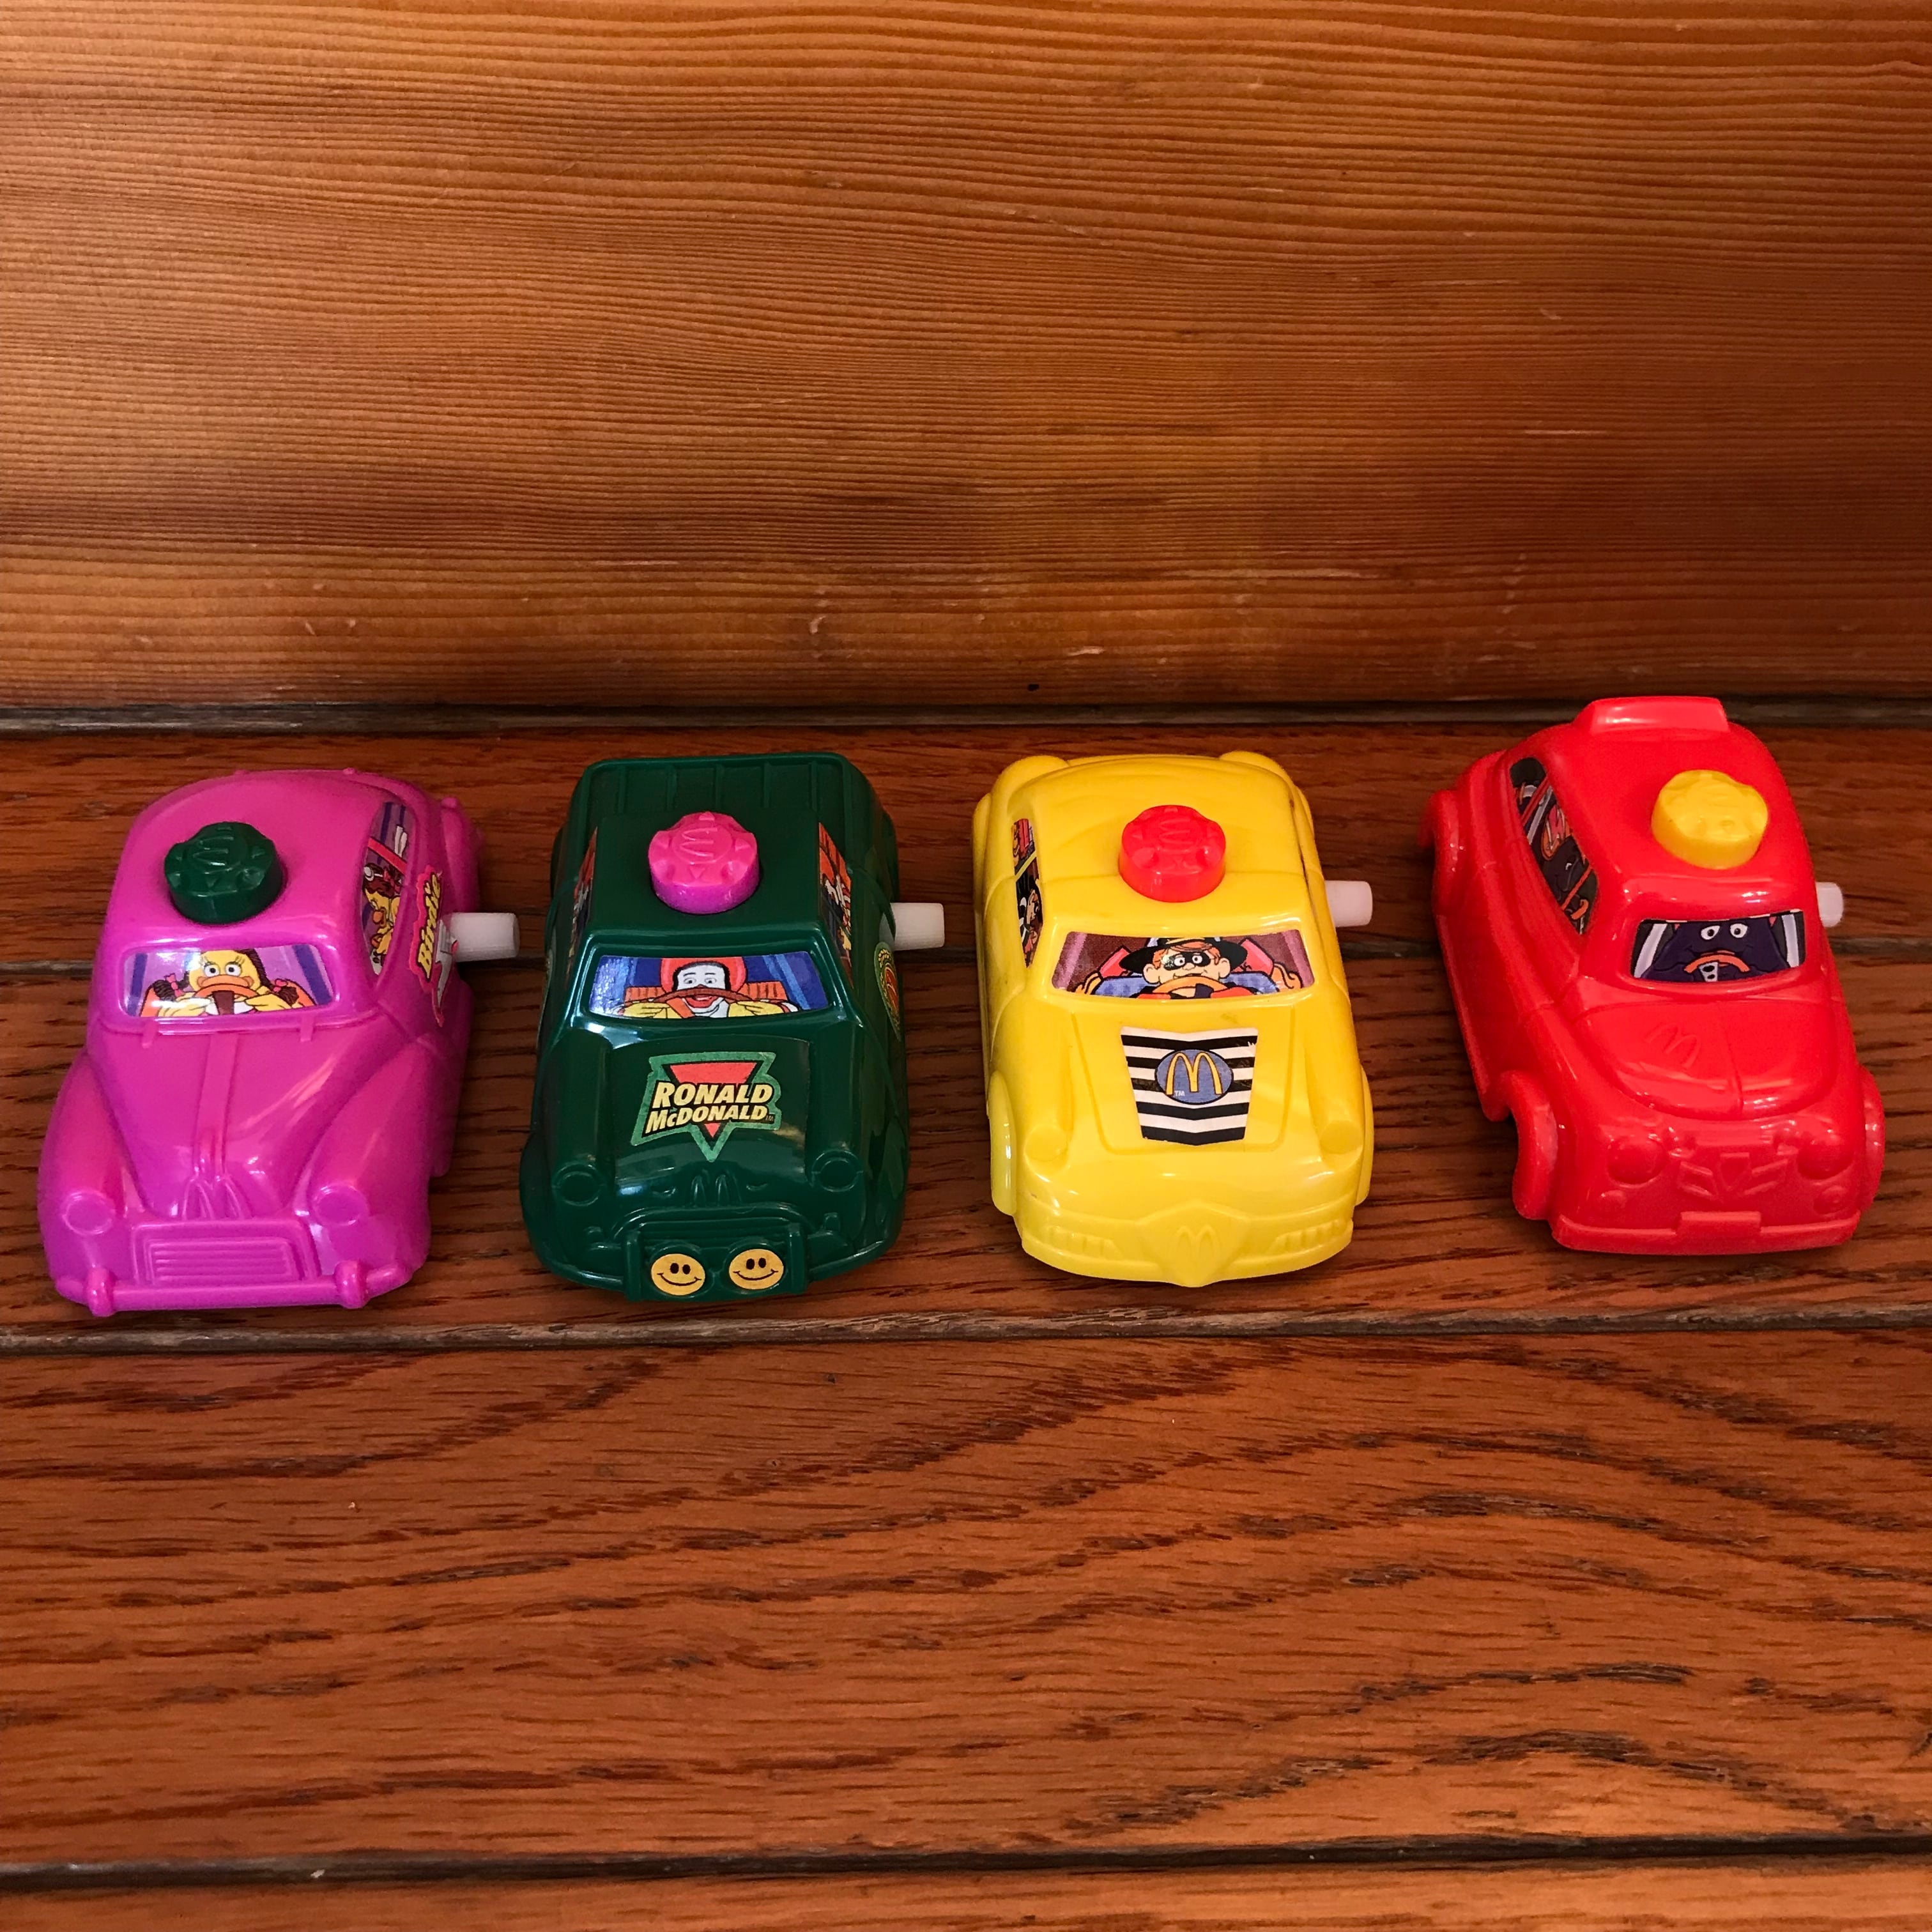 96’ マクドナルドトイ 『スーパーシフターズ』シリーズ全4種類コンプリートセット ヴィンテージのハッピーセットおもちゃ ミールトイ